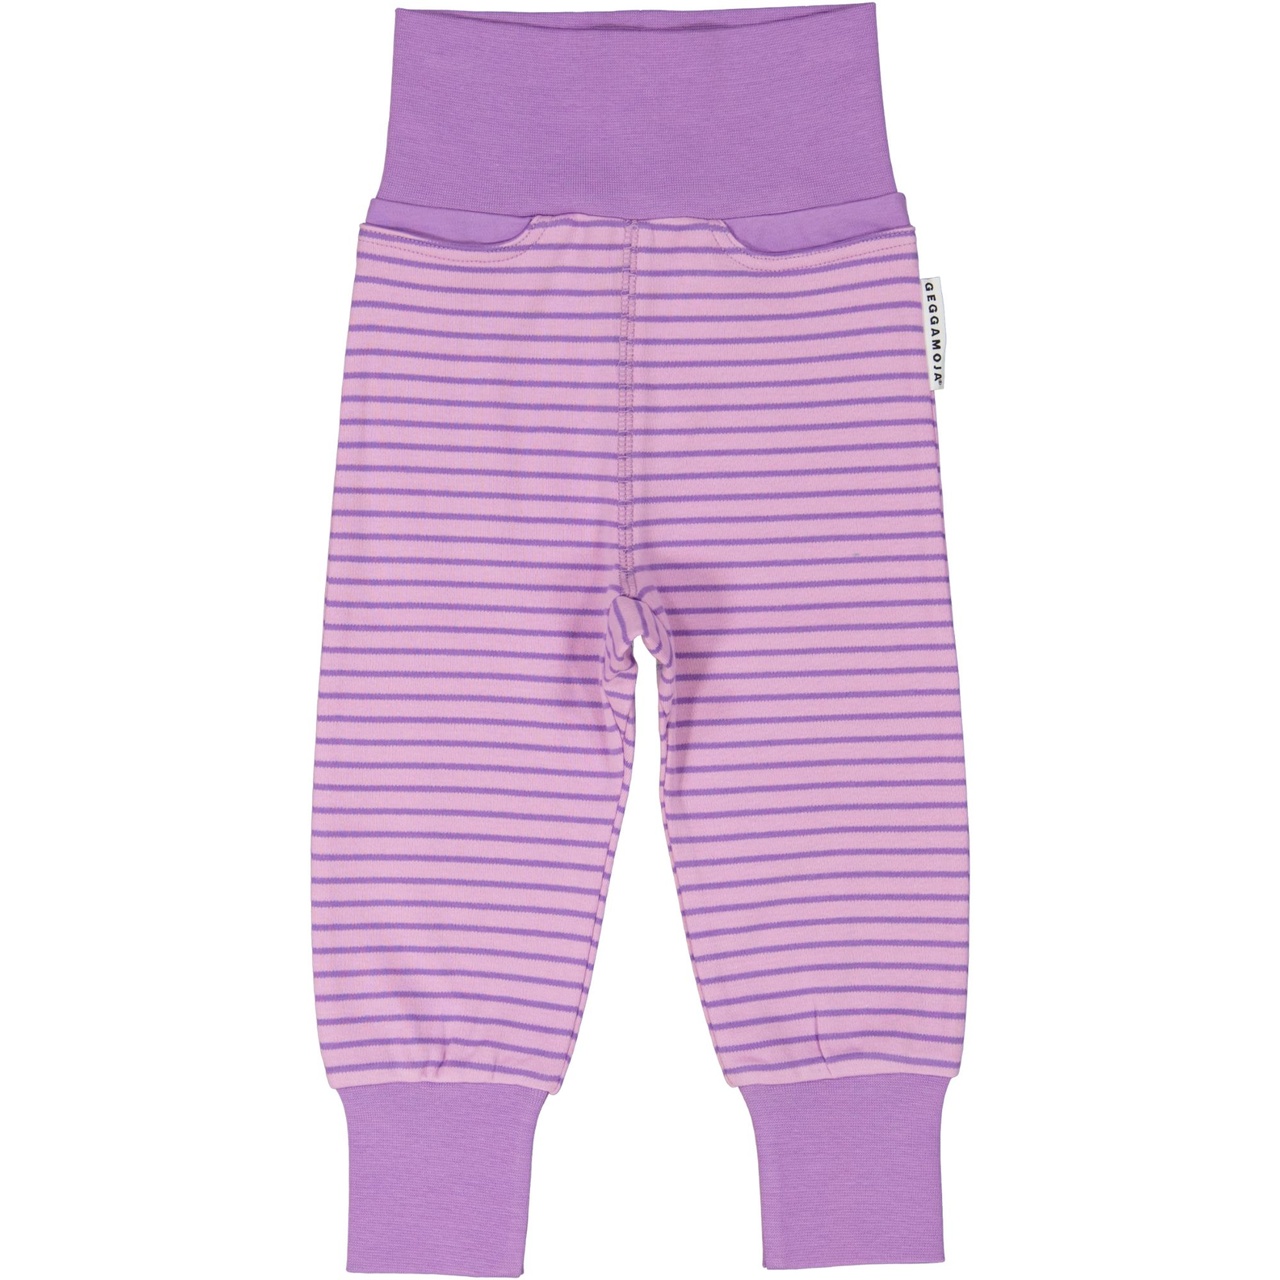 Baby trousers L.purple/purple  98/104